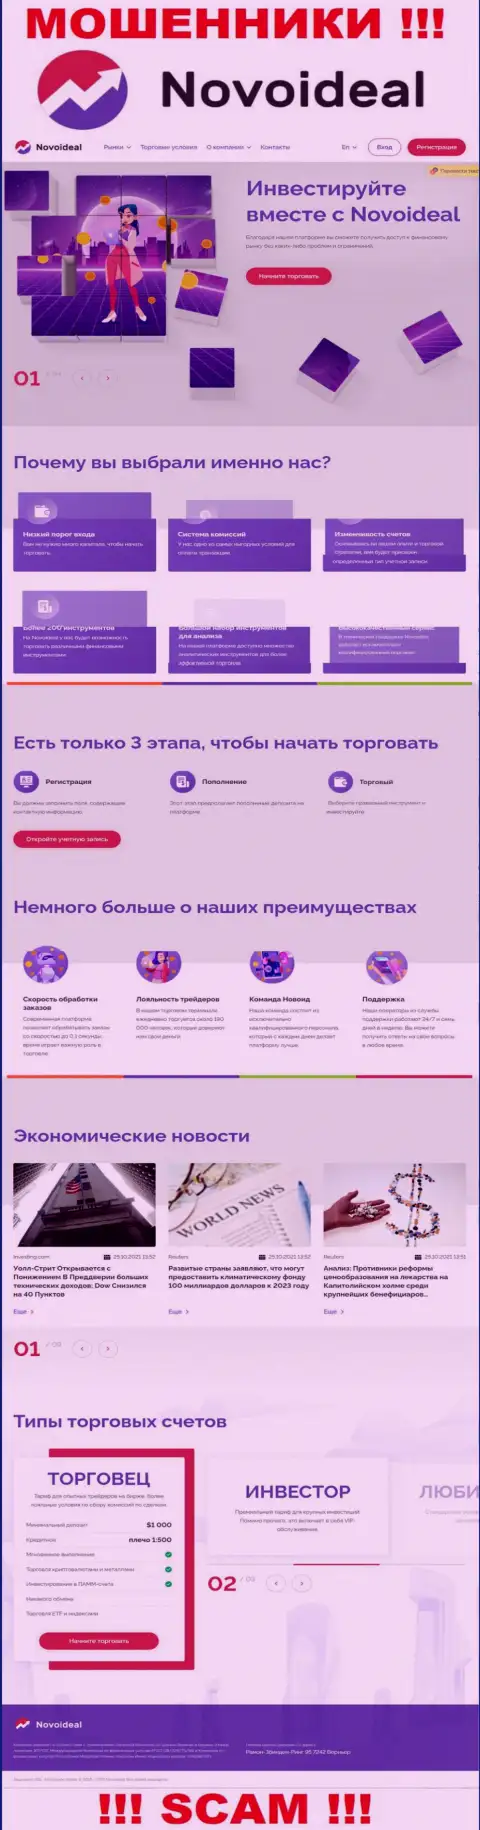 Официальный веб-портал НовоИдеал Ком - это красивая картинка для заманухи жертв